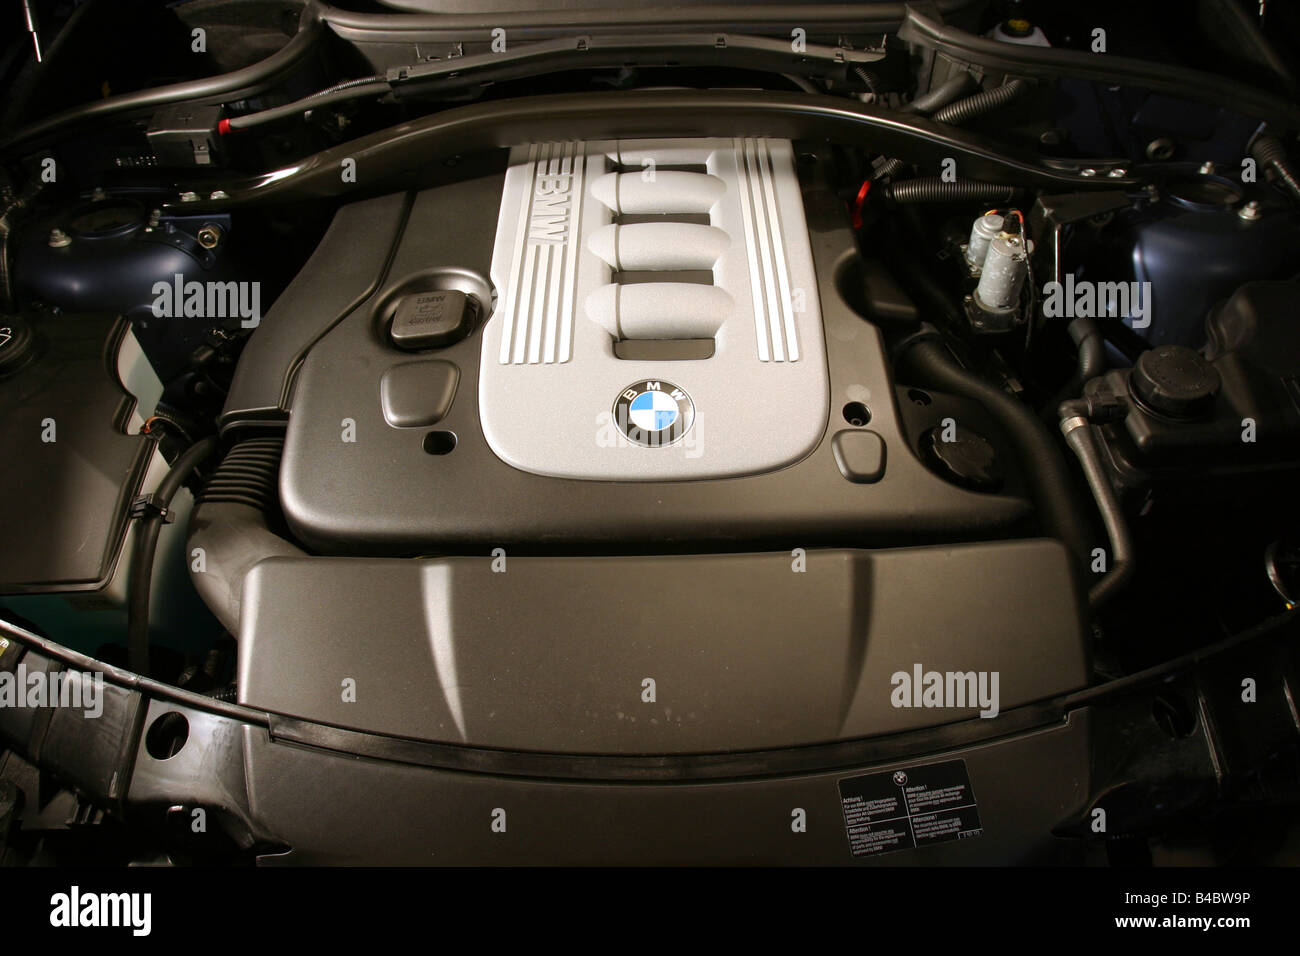 Auto, BMW X3 3,0 d, Langlauf-Fahrzeug, Bj. 2003-blau, innere besichtigen,  Innenansicht, Cockpit, Technik/Zubehör, acc Stockfotografie - Alamy